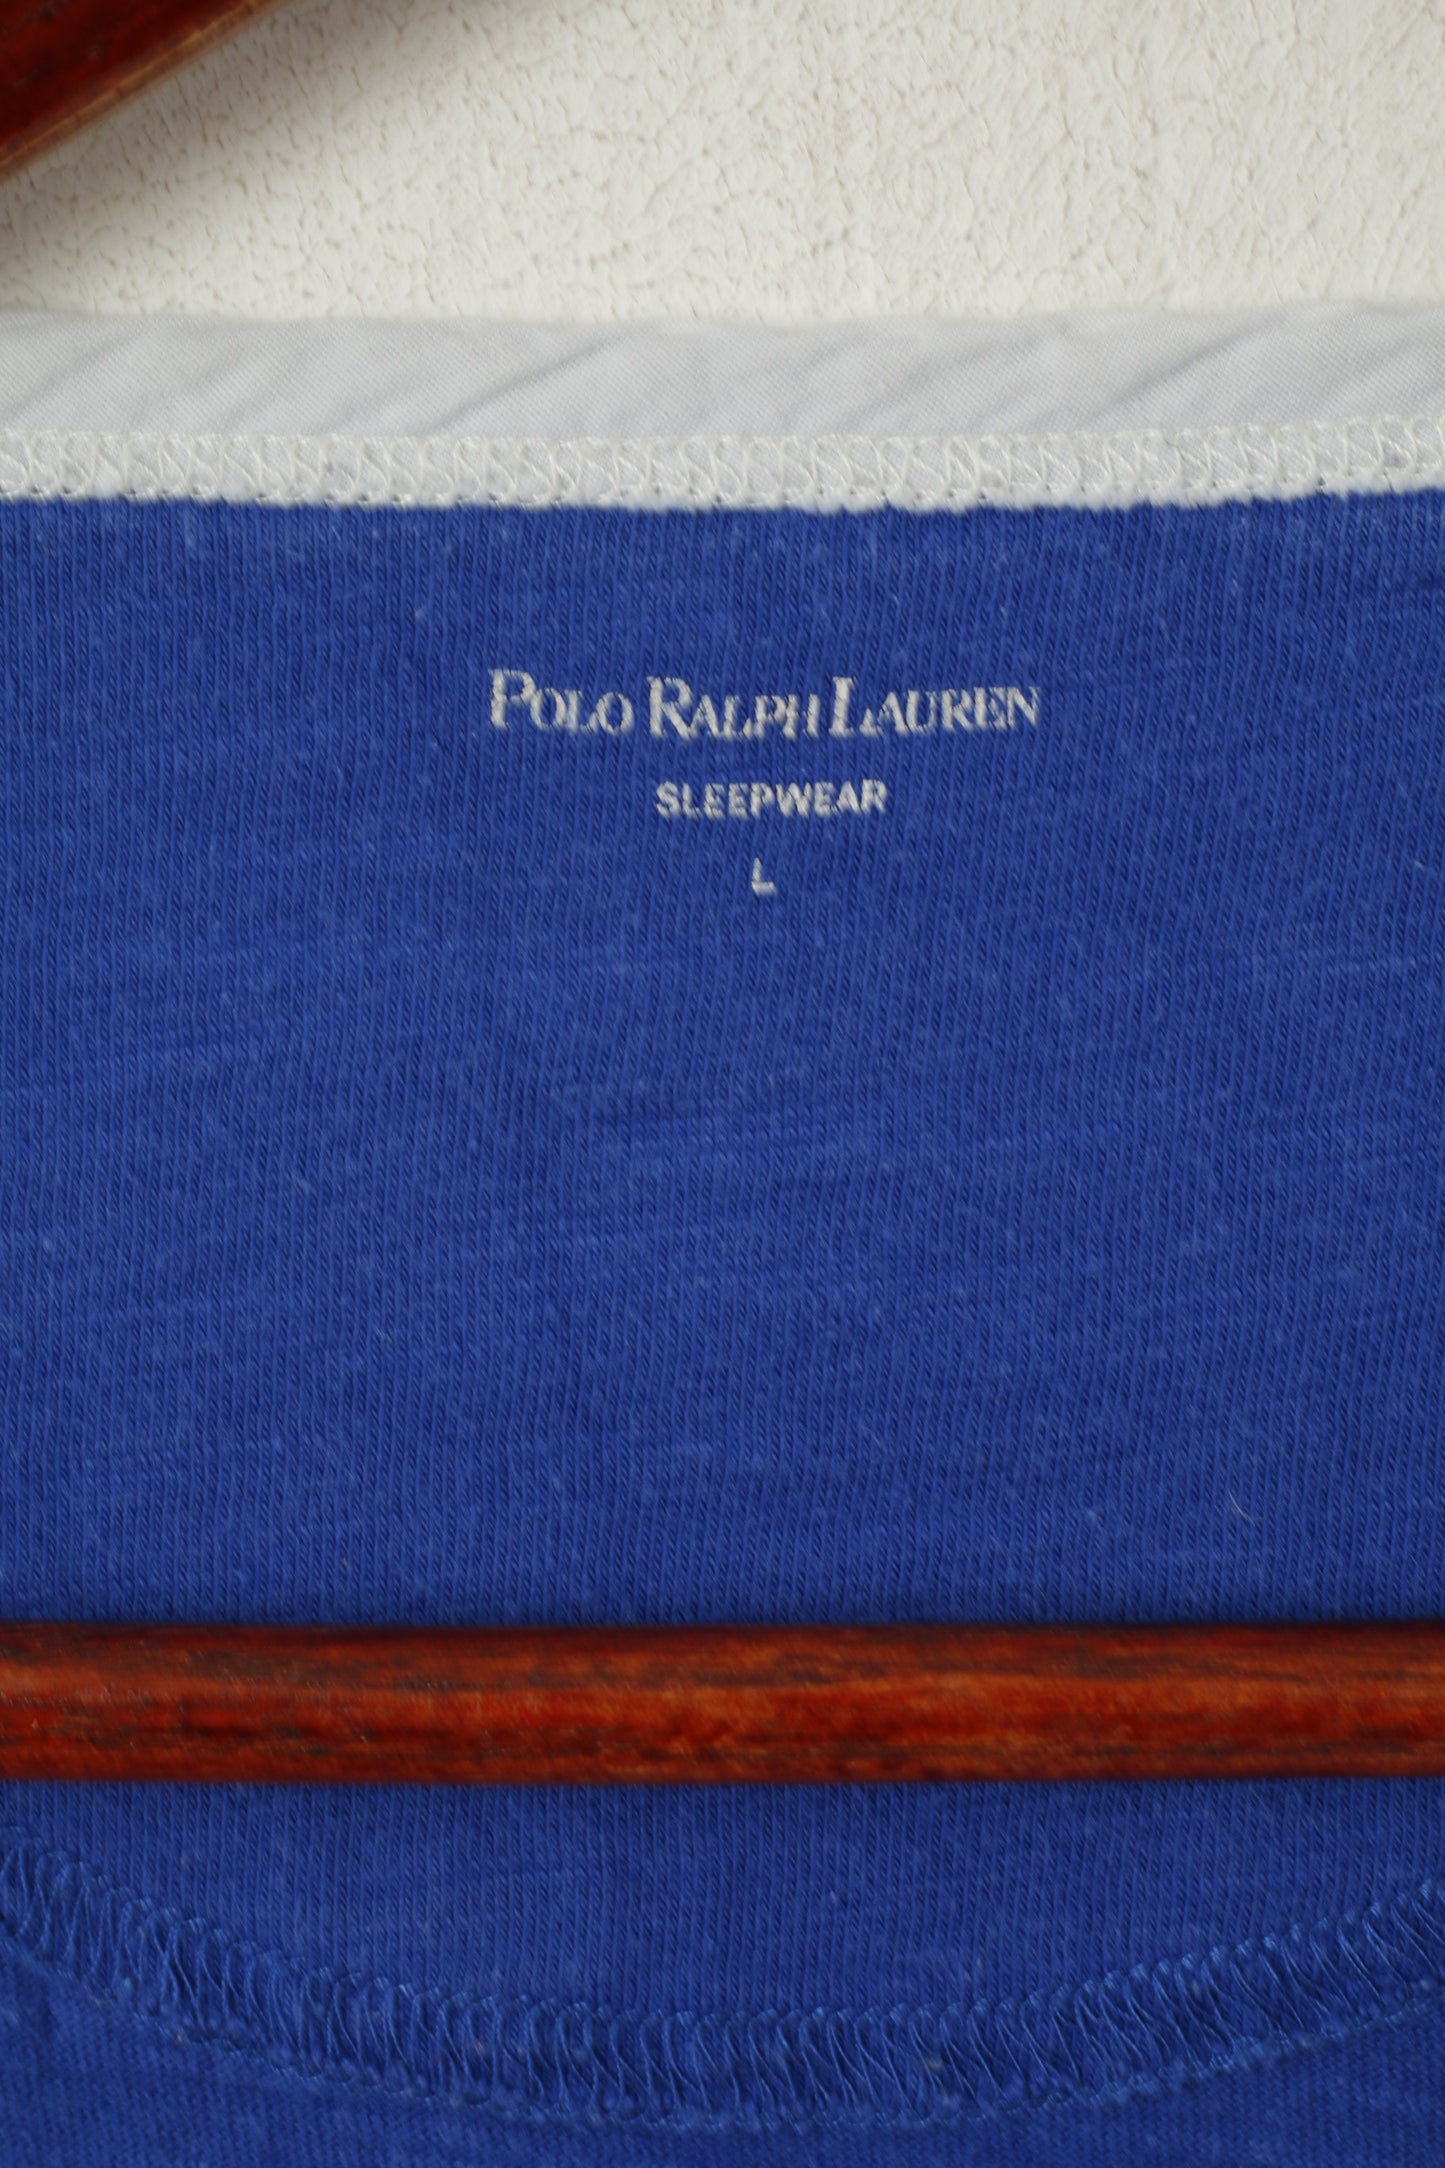 Polo Ralph Lauren Sleepwear Men L Shirt Blue Cotton Short Sleeve Top